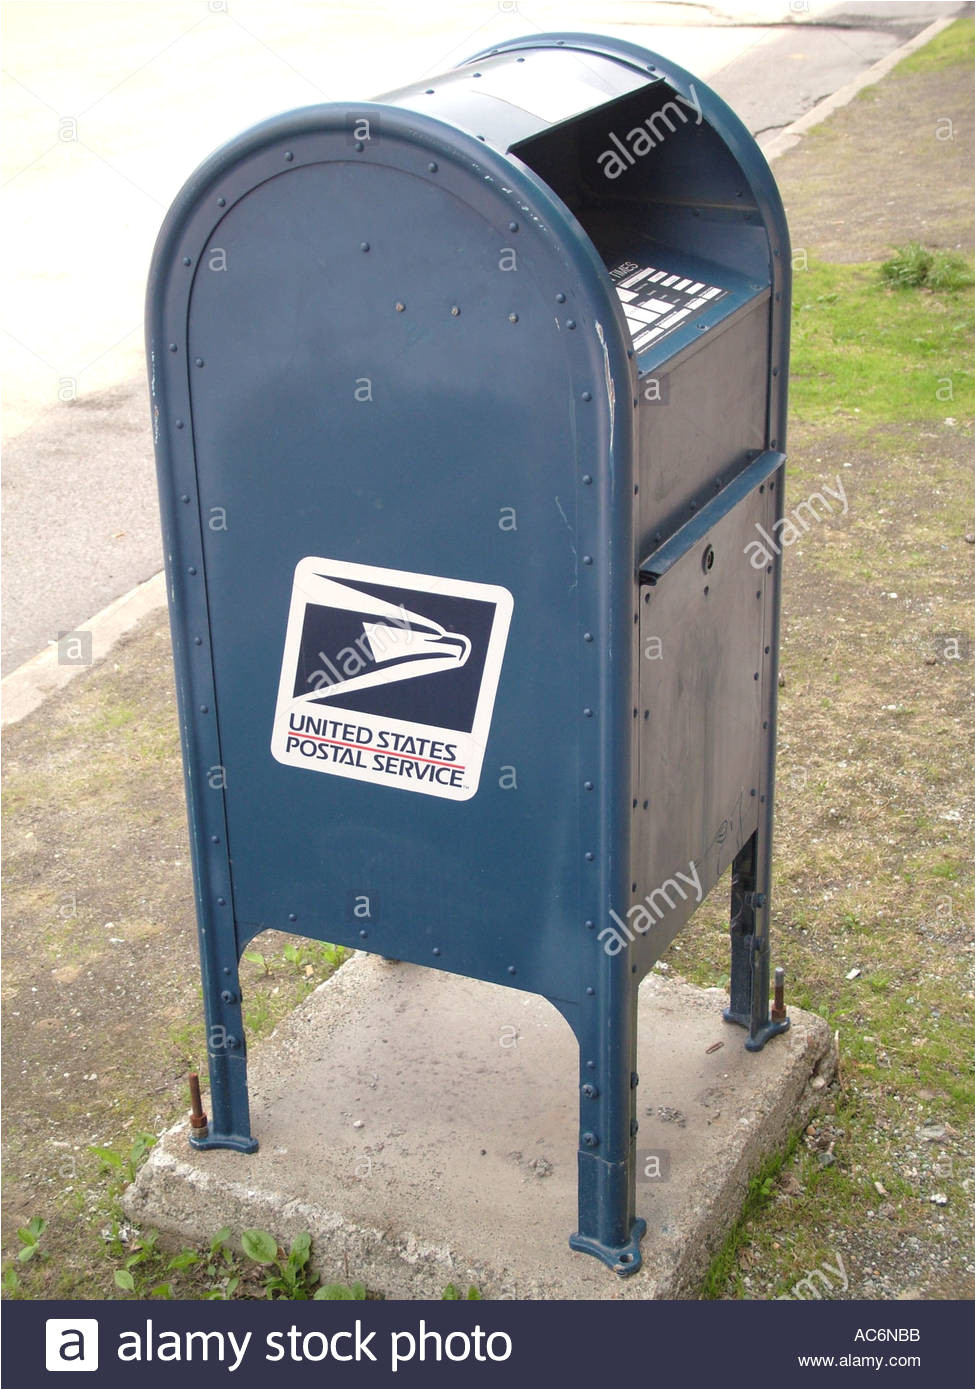 ajd42828 postfacher united states postal service stockbild